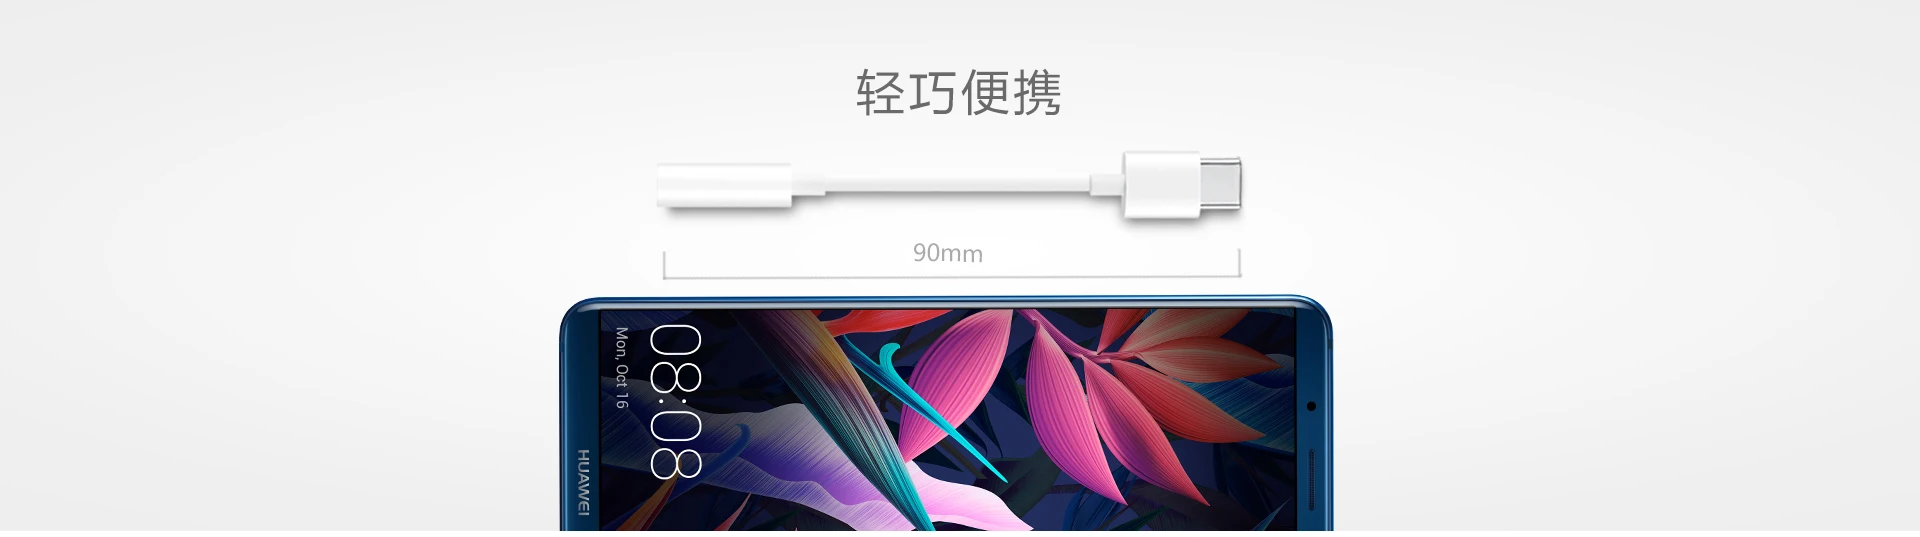 Кабель для наушников с разъемом типа C 3,5 USB C до 3,5 мм адаптер для наушников AUX для huawei P10 P20 pro для Xiaomi Mi 6 8 аудиокабель